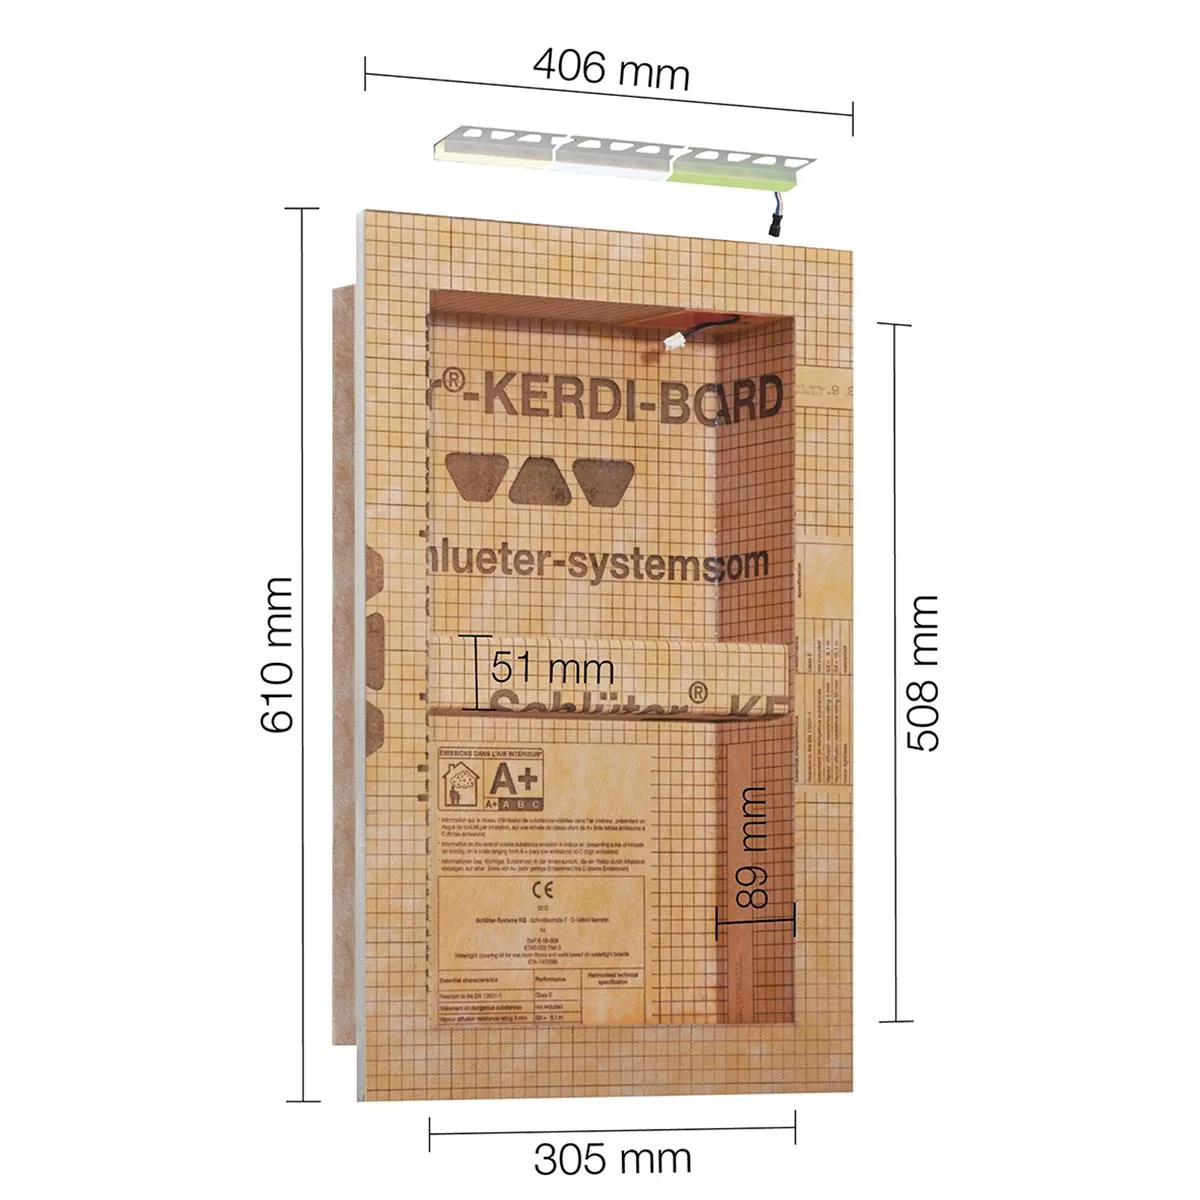 Schlüter Kerdi Board NLT ensemble de niches éclairage LED blanc neutre 30,5x50,8x0,89 cm